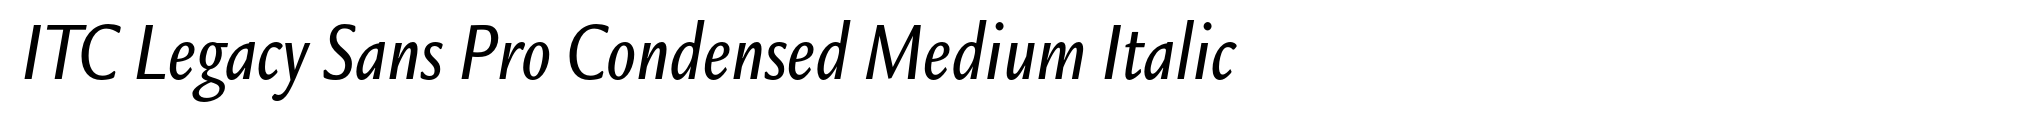 ITC Legacy Sans Pro Condensed Medium Italic image